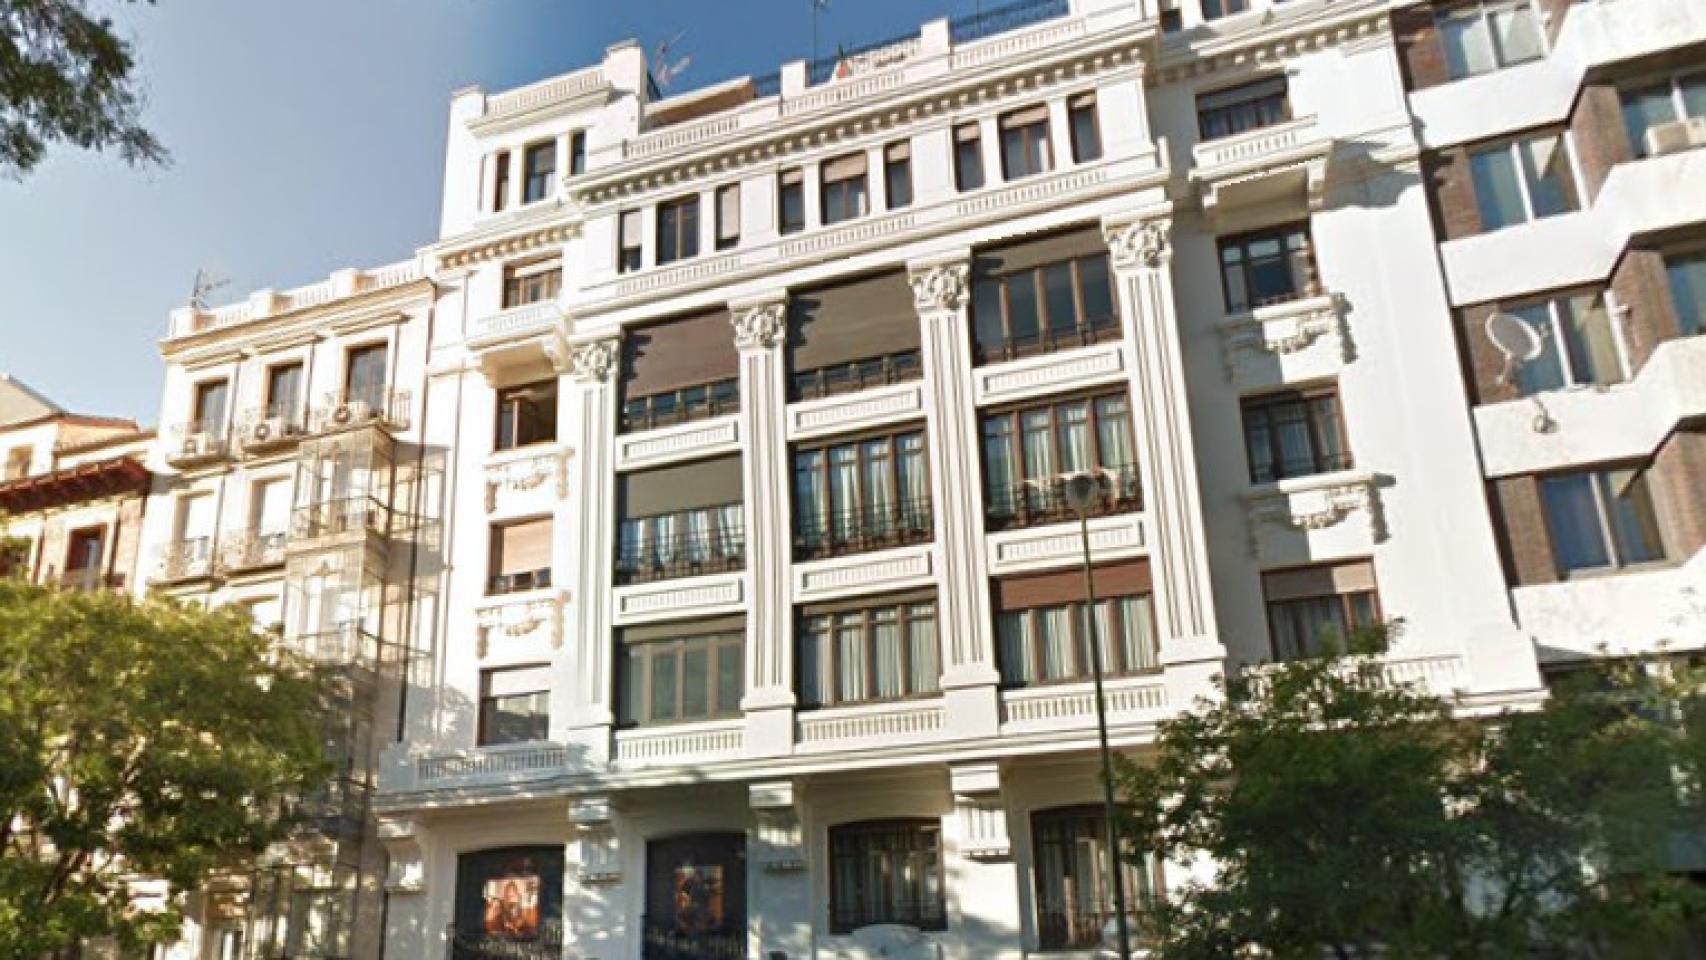 Edificio de viviendas de Antonio Palacios ubicado en calle Goya, 100.